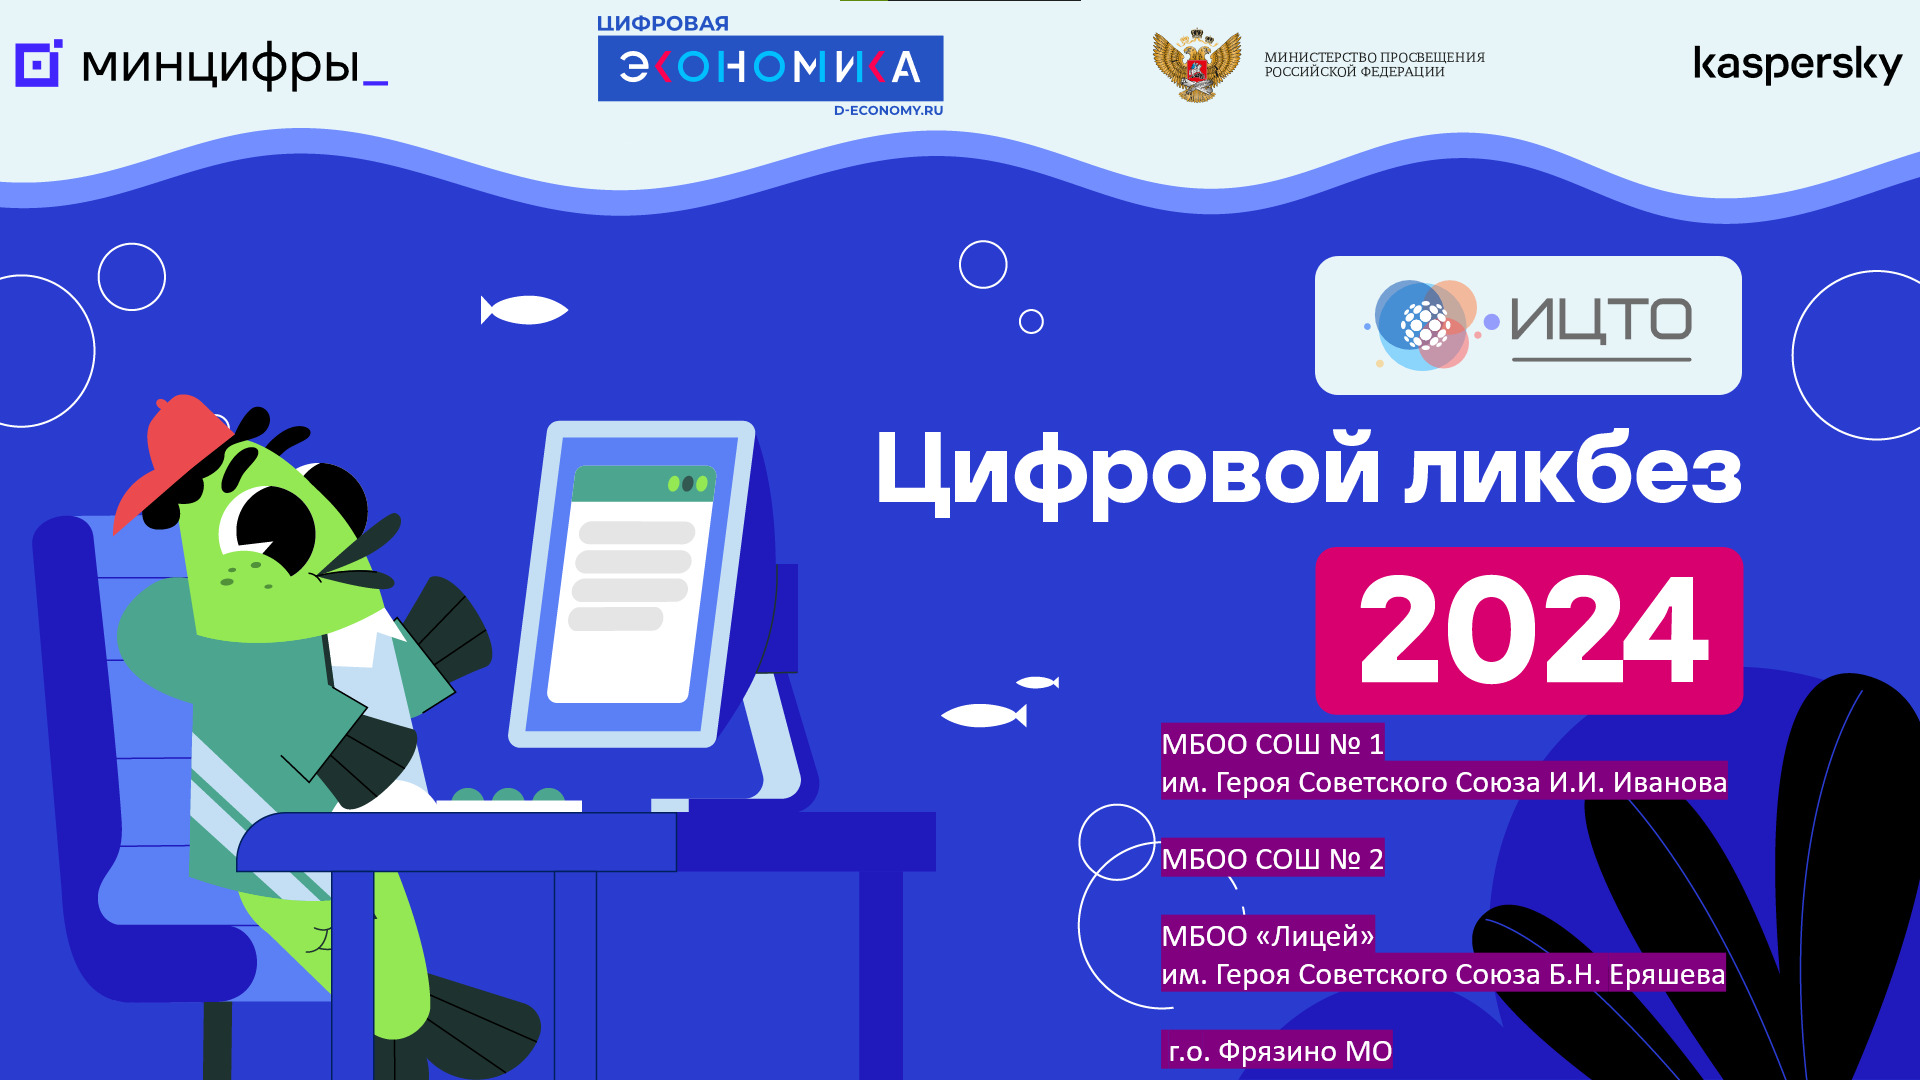 АНО «ИЦТО» совместно с Министерством образования Московской области проведет второй открытый урок "Цифровая грамотность и кибербезопасность"